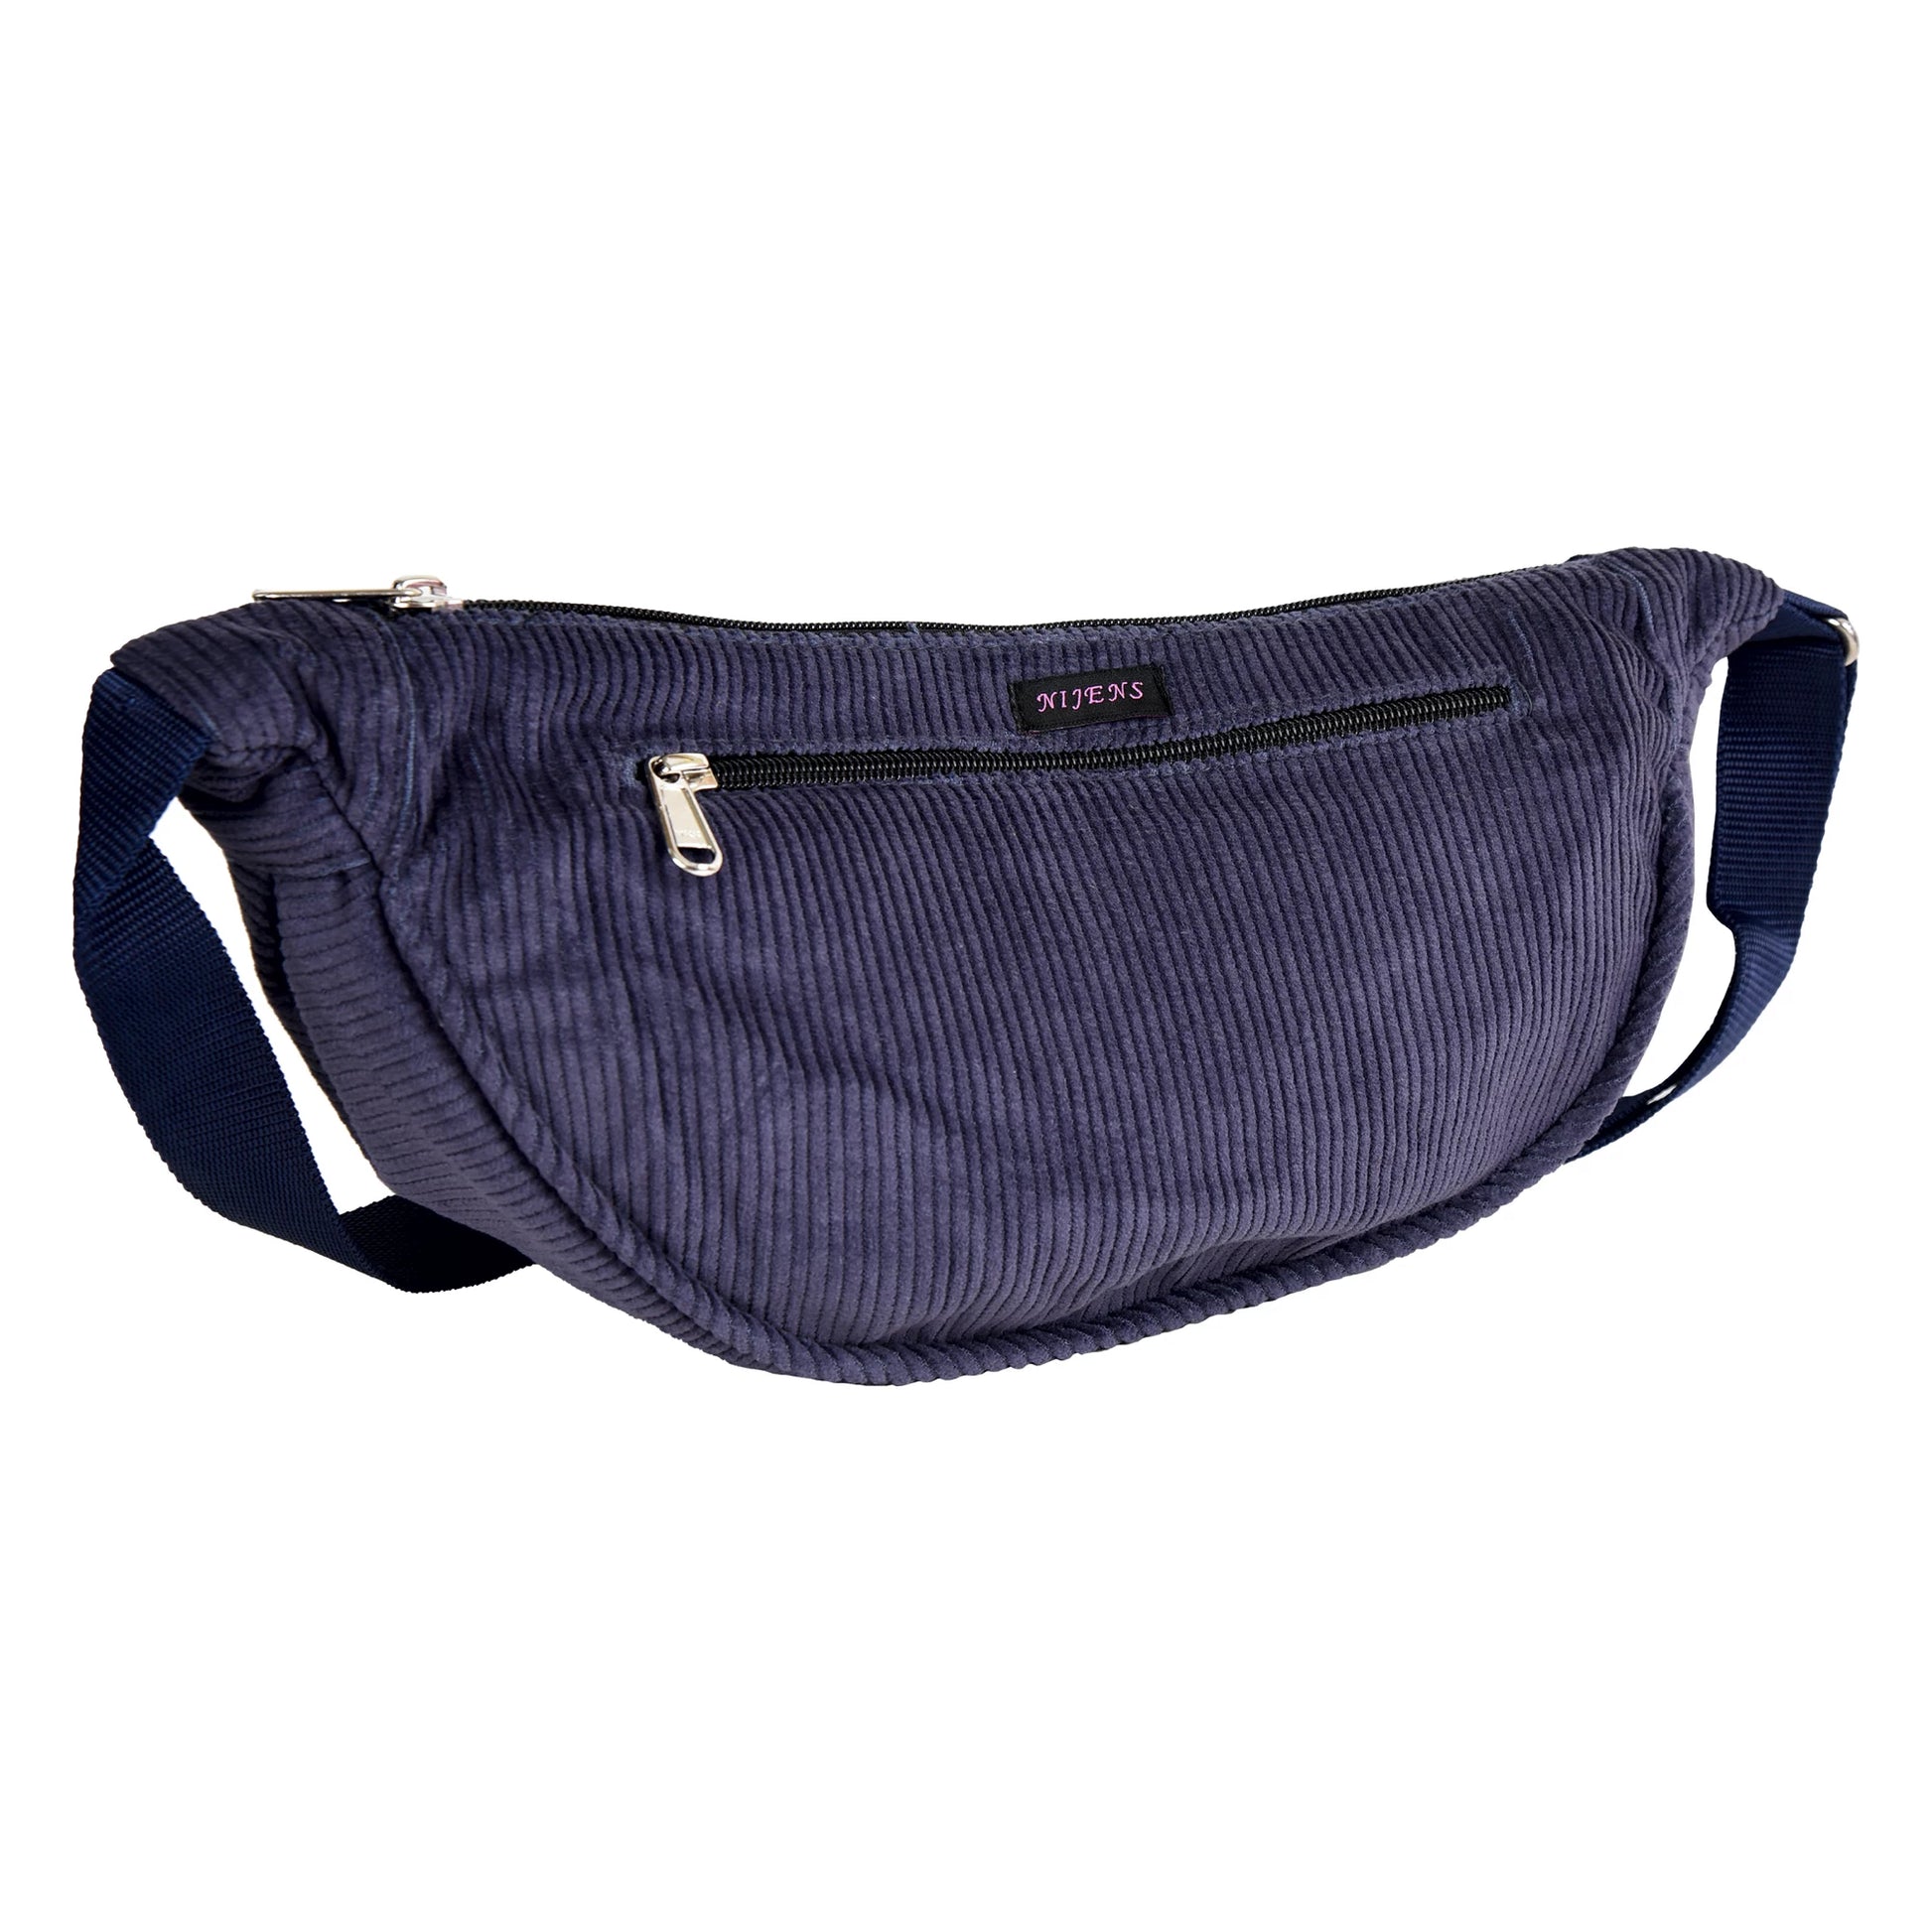 Kleine marineblaue Crossbody-Bag, Umhängetasche aus Cordsamt mit zwei Reißverschluss Fächern.